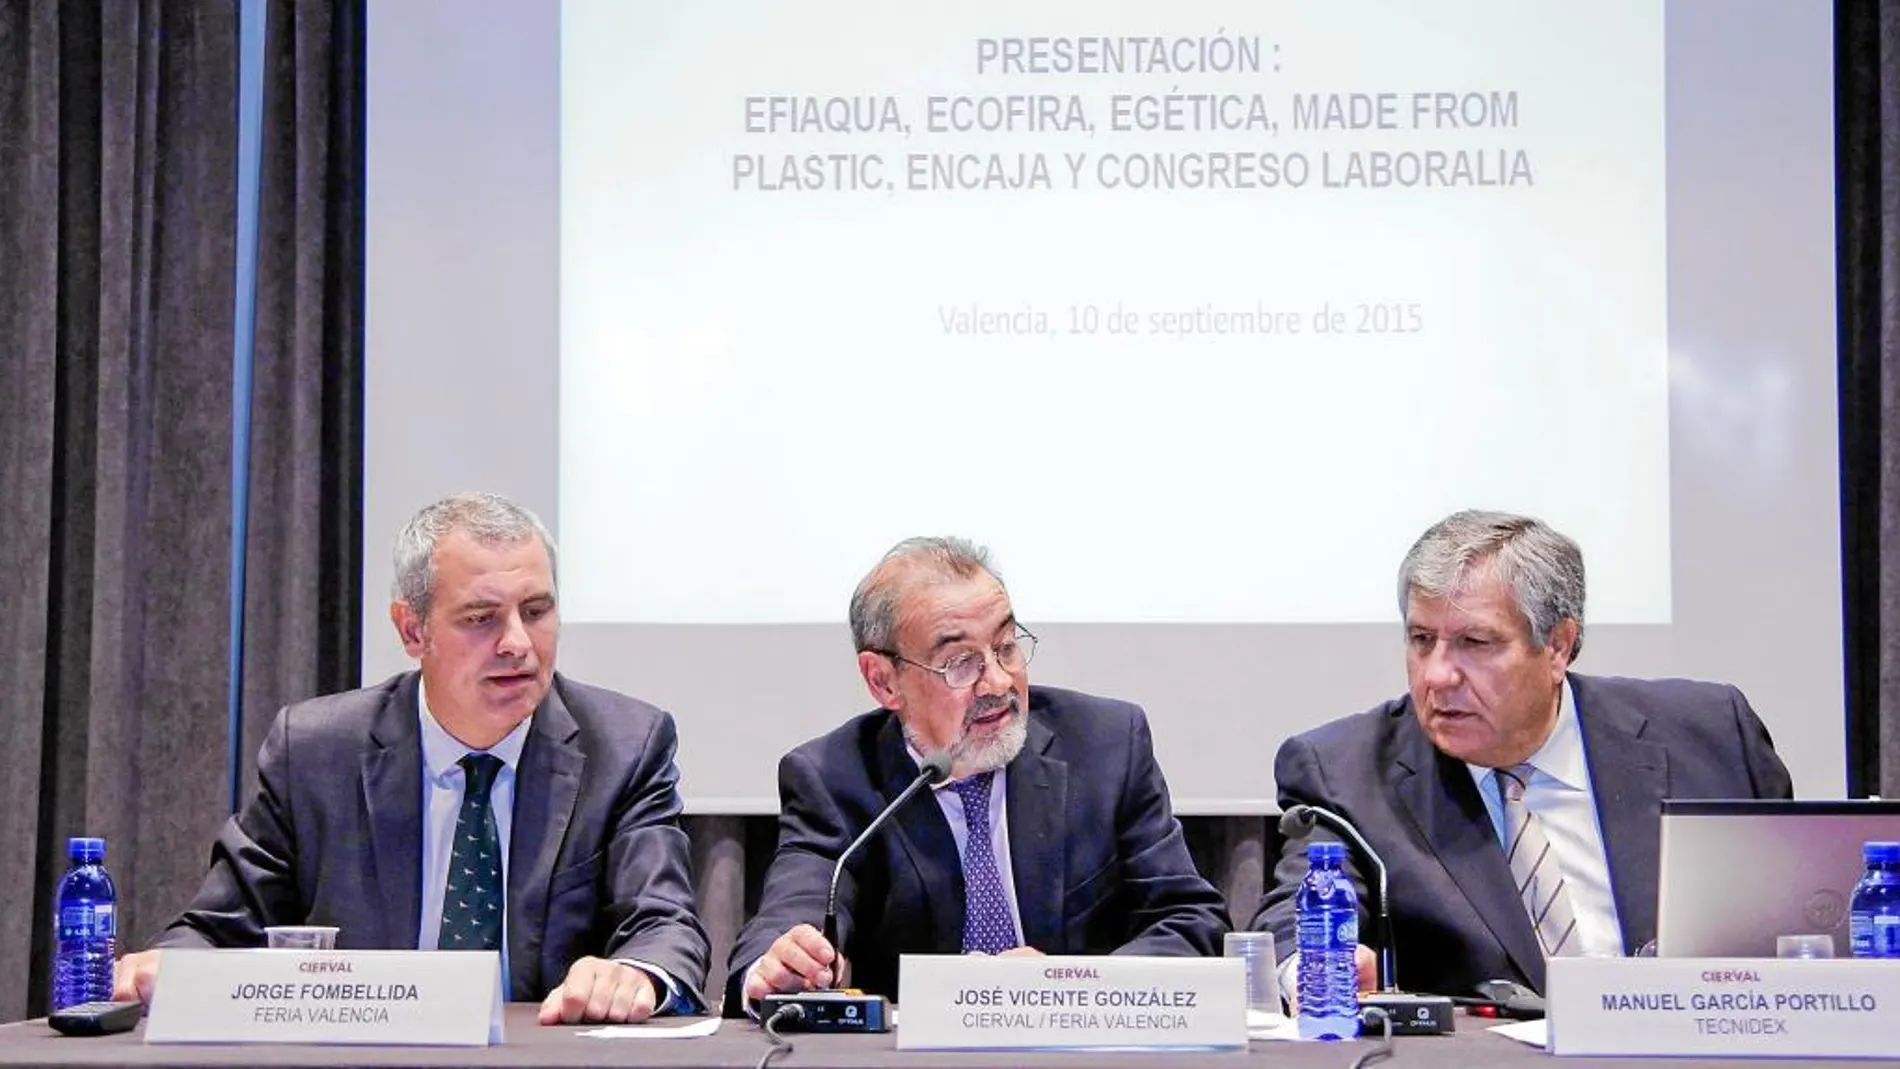 González, ayer durante la presentación de las ferias Efiaqua, Ecofira, Egética, Made from Plastic, Encaja y Laboralia